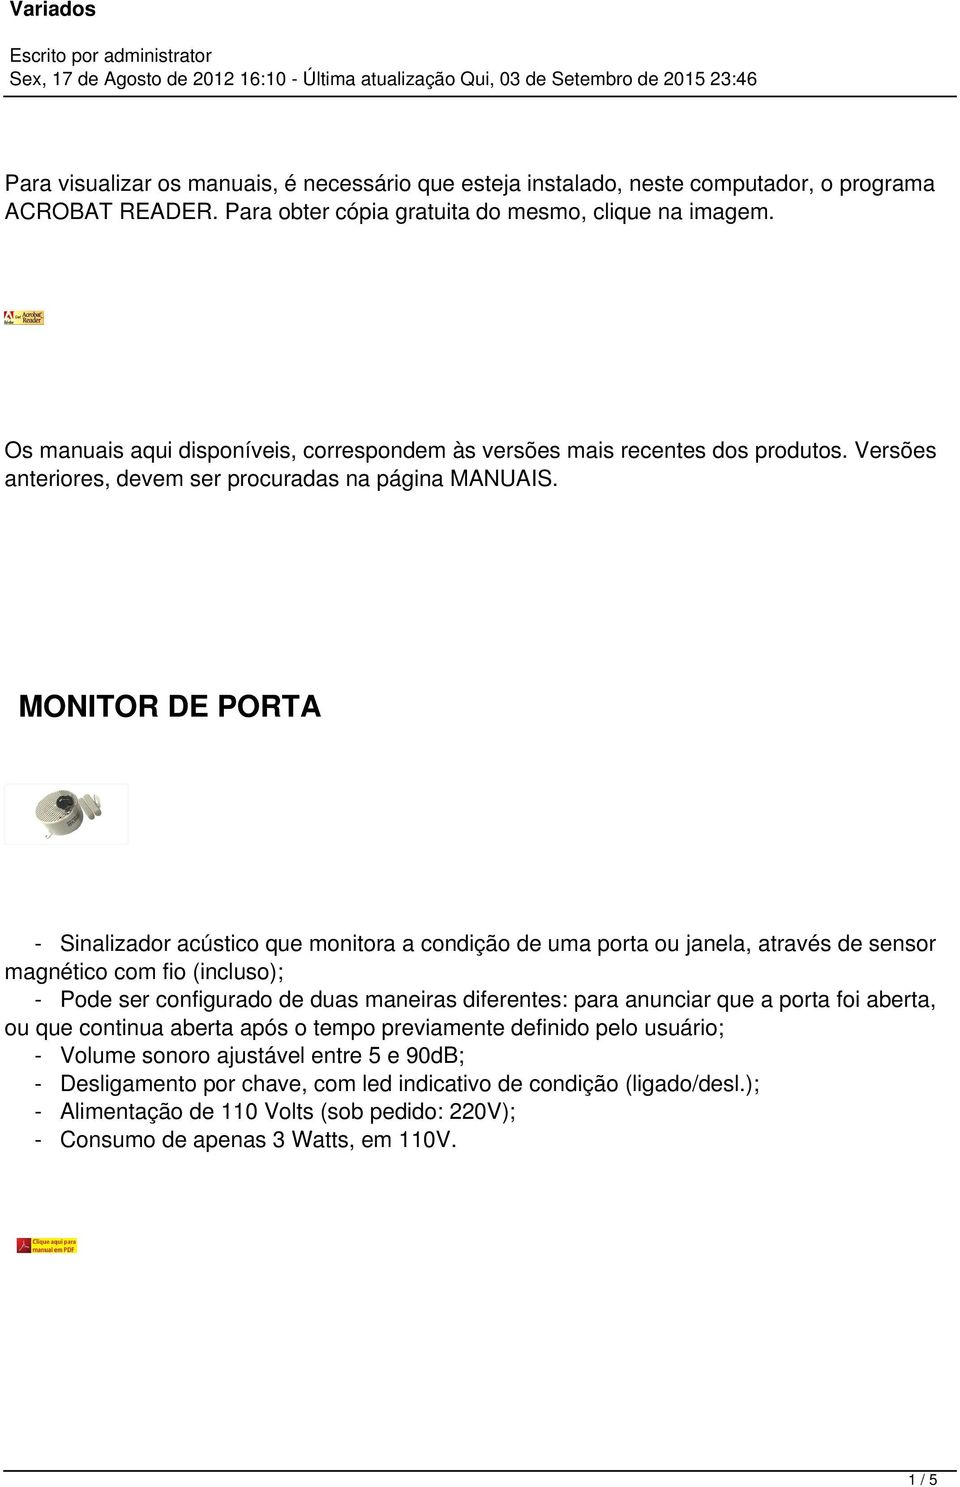 MONITOR DE PORTA - Sinalizador acústico que monitora a condição de uma porta ou janela, através de sensor magnético com fio (incluso); - Pode ser configurado de duas maneiras diferentes: para